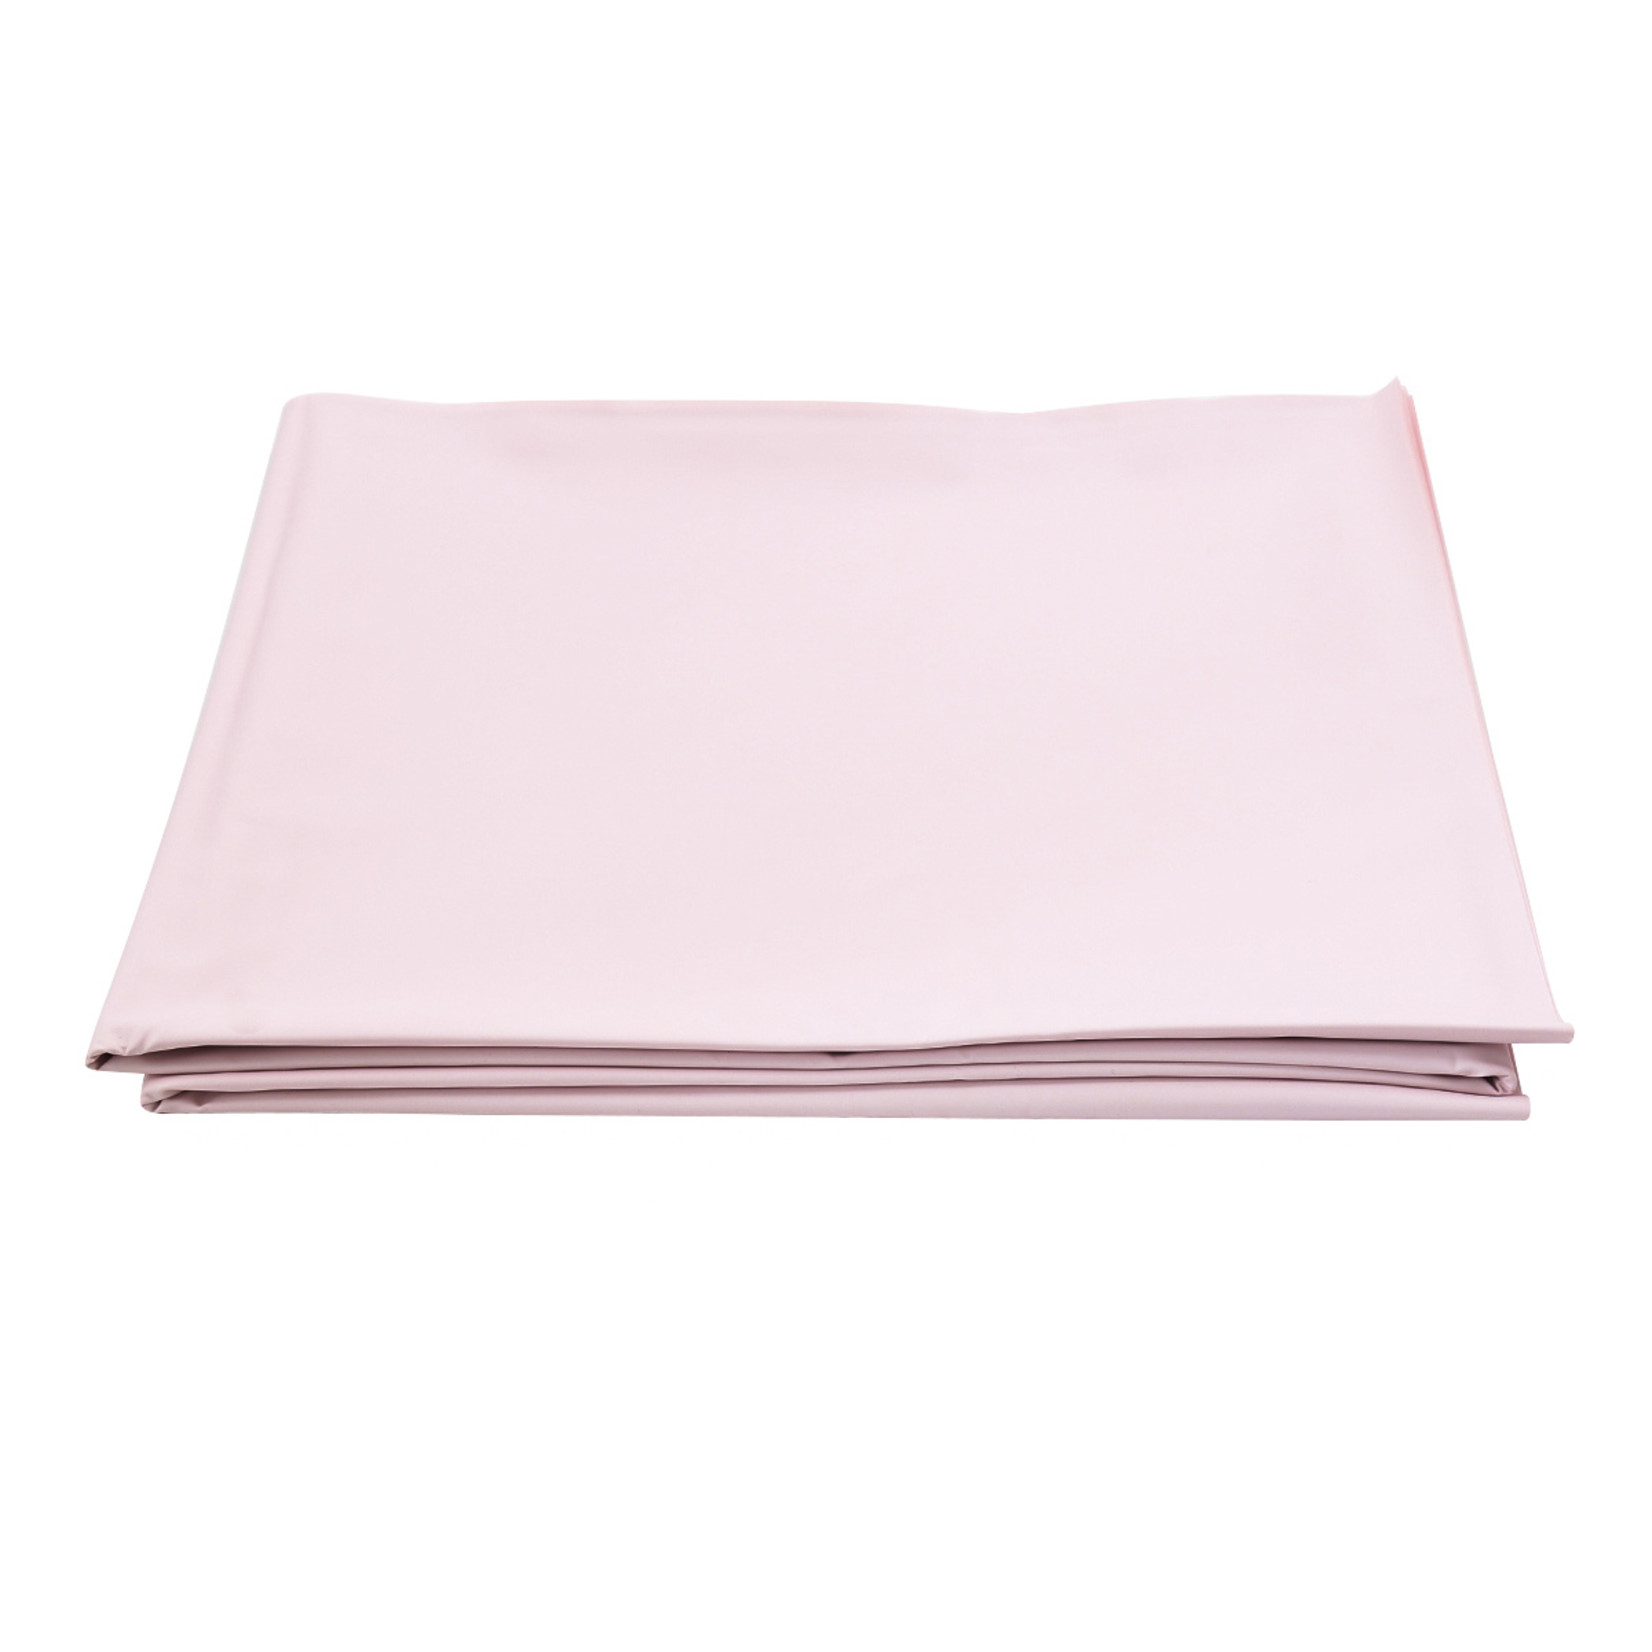 KIOTOS Bed Sheet Cover Pink PVC